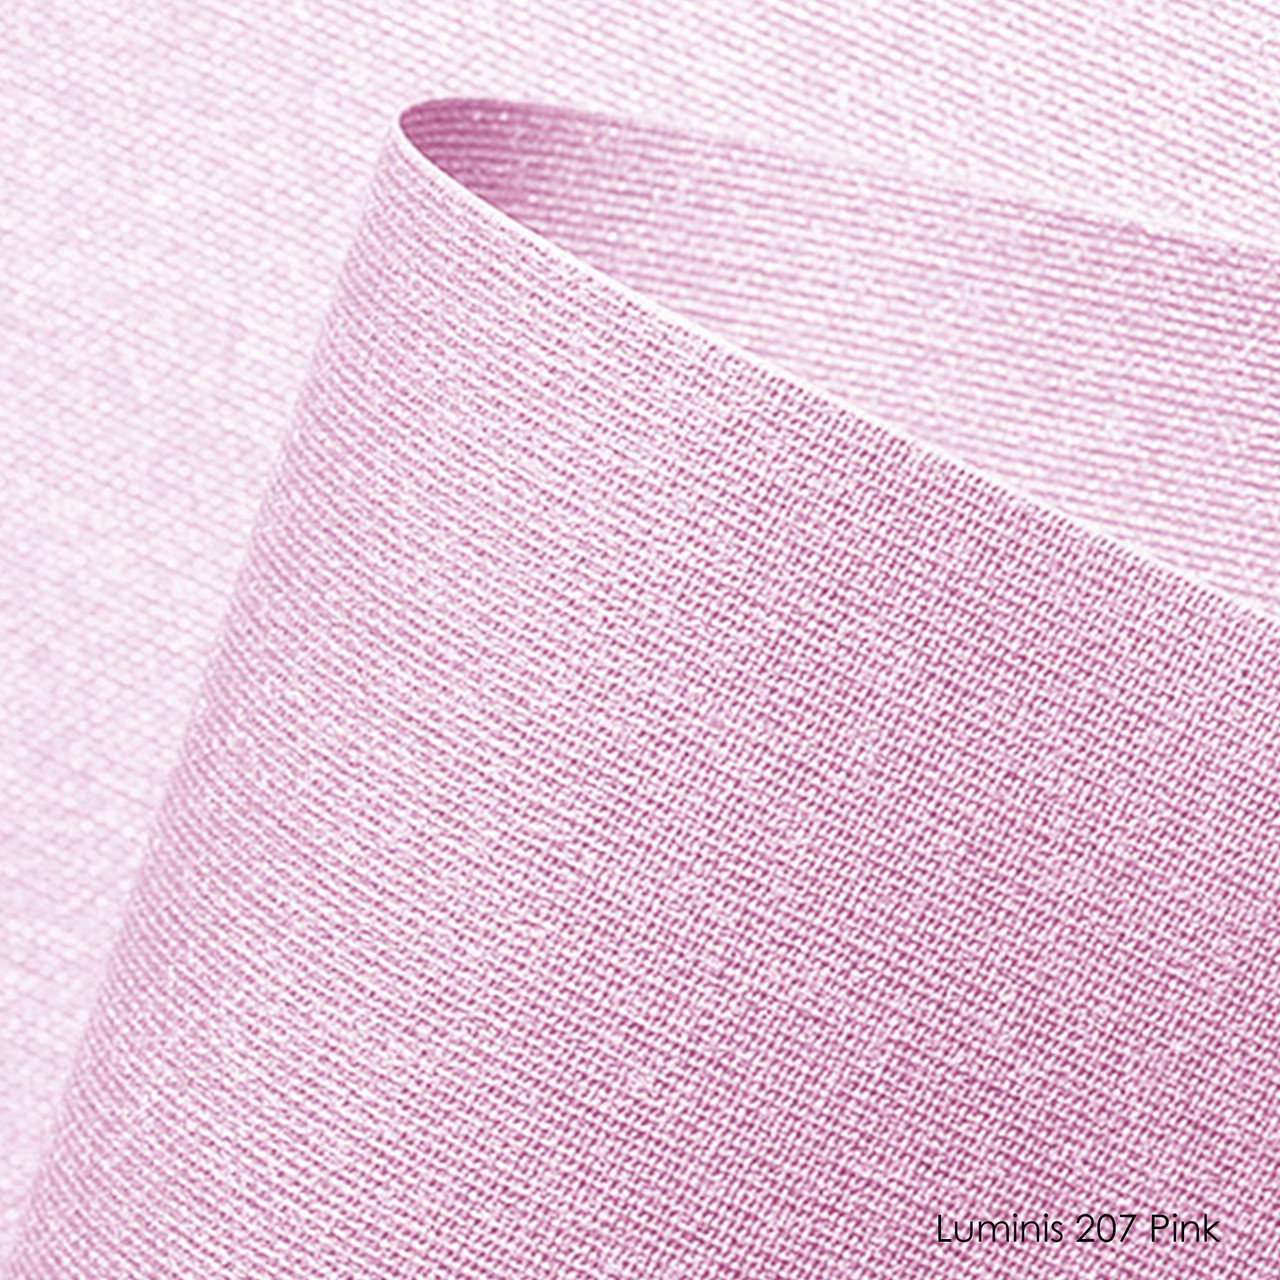 Luminis-207 pink